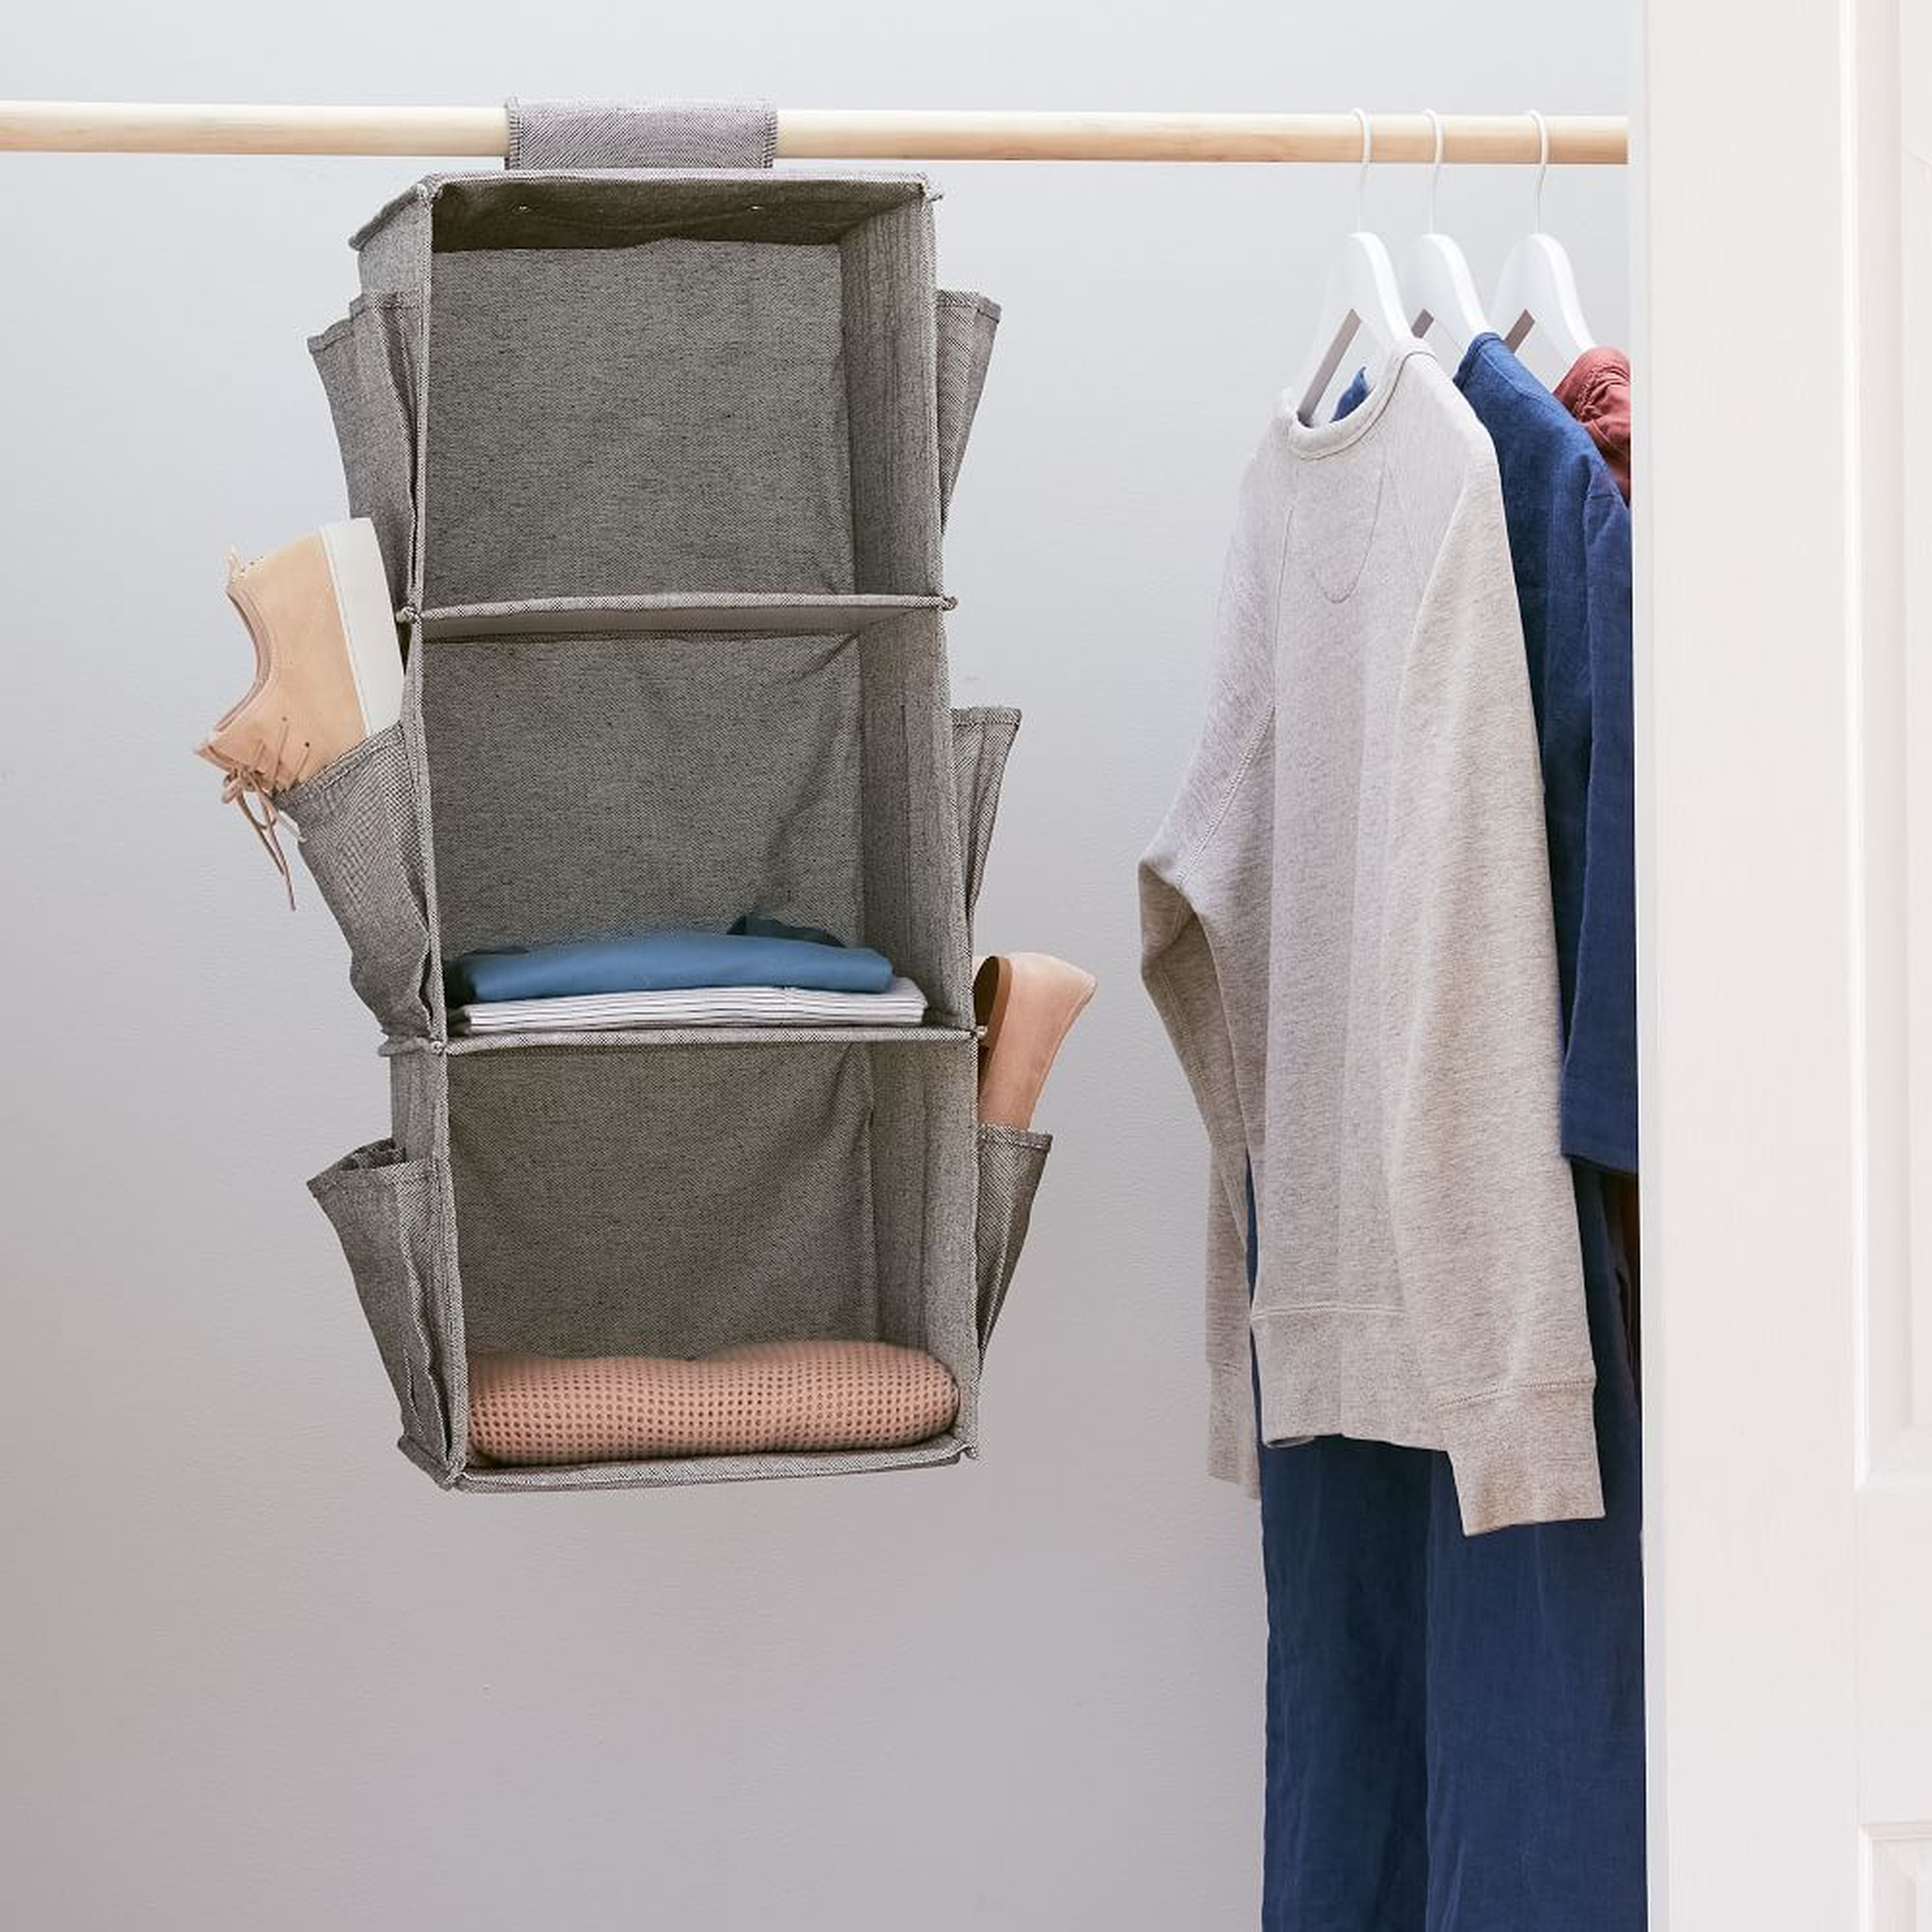 Soft Closet Storage - Hanging Closet Organizer + Shoe Pockets, Storm Gray - West Elm